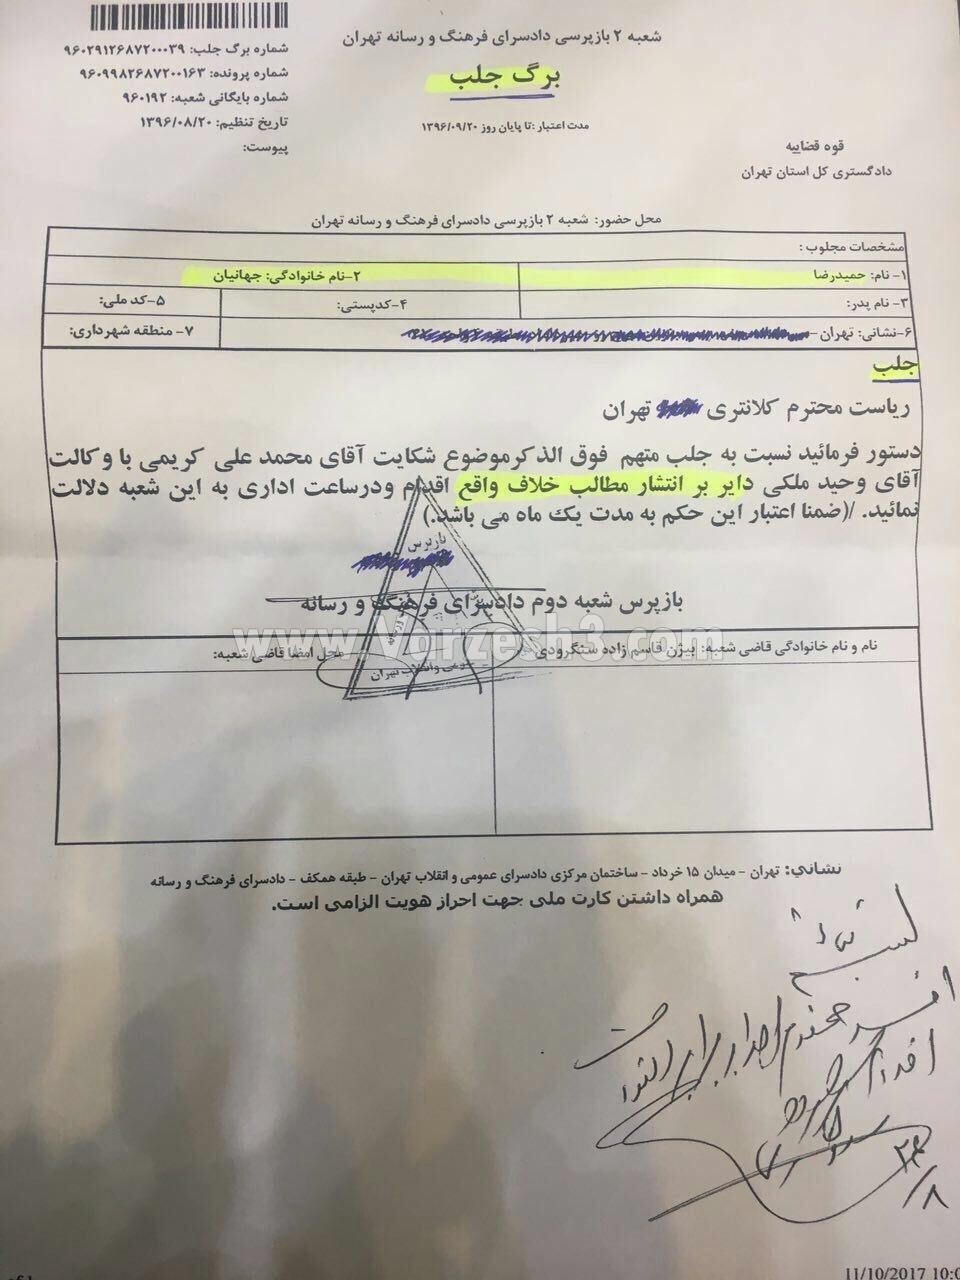 علی کریمی حکم جلب مالک باشگاه نفت را گرفت